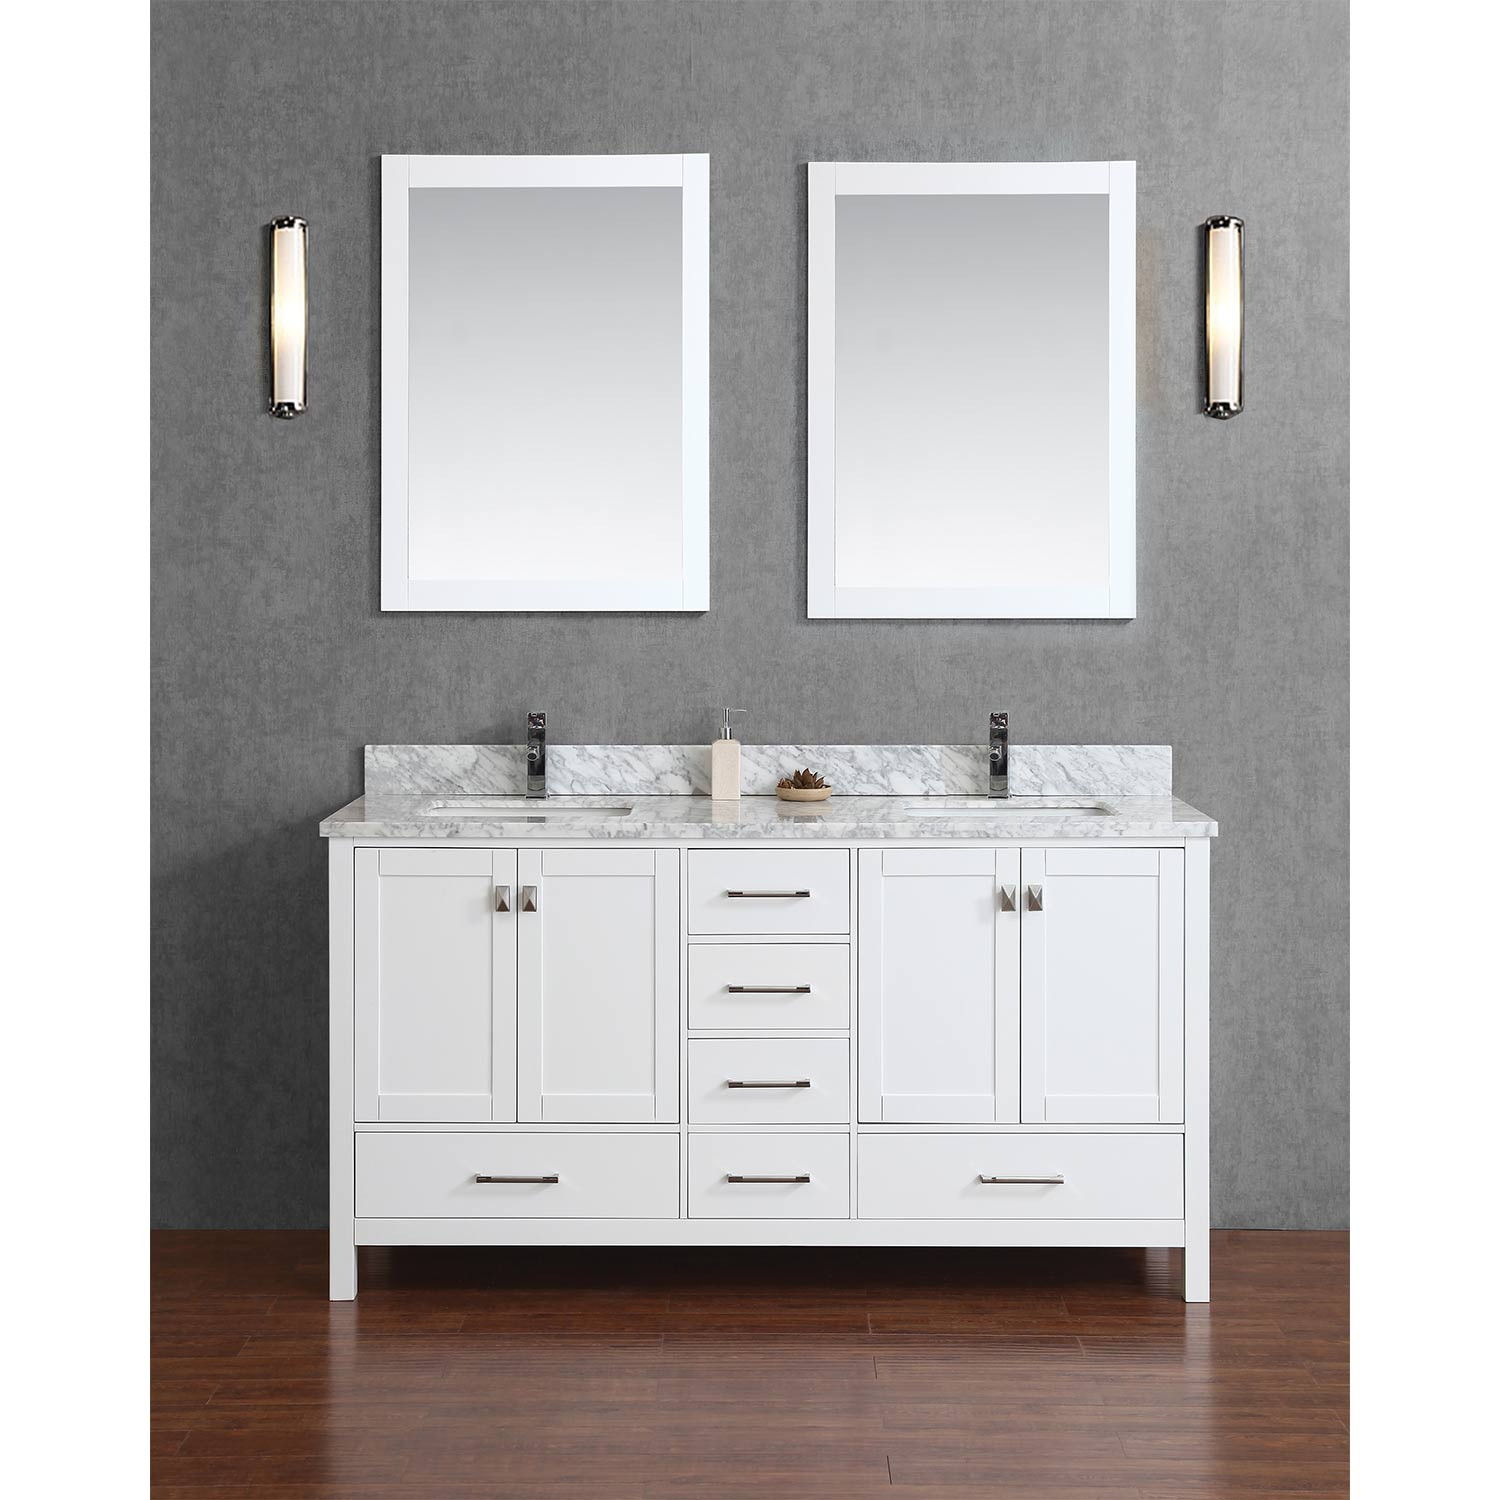 Real Wood Bathroom Vanities
 Buy Vincent 60" Solid Wood Double Bathroom Vanity in White